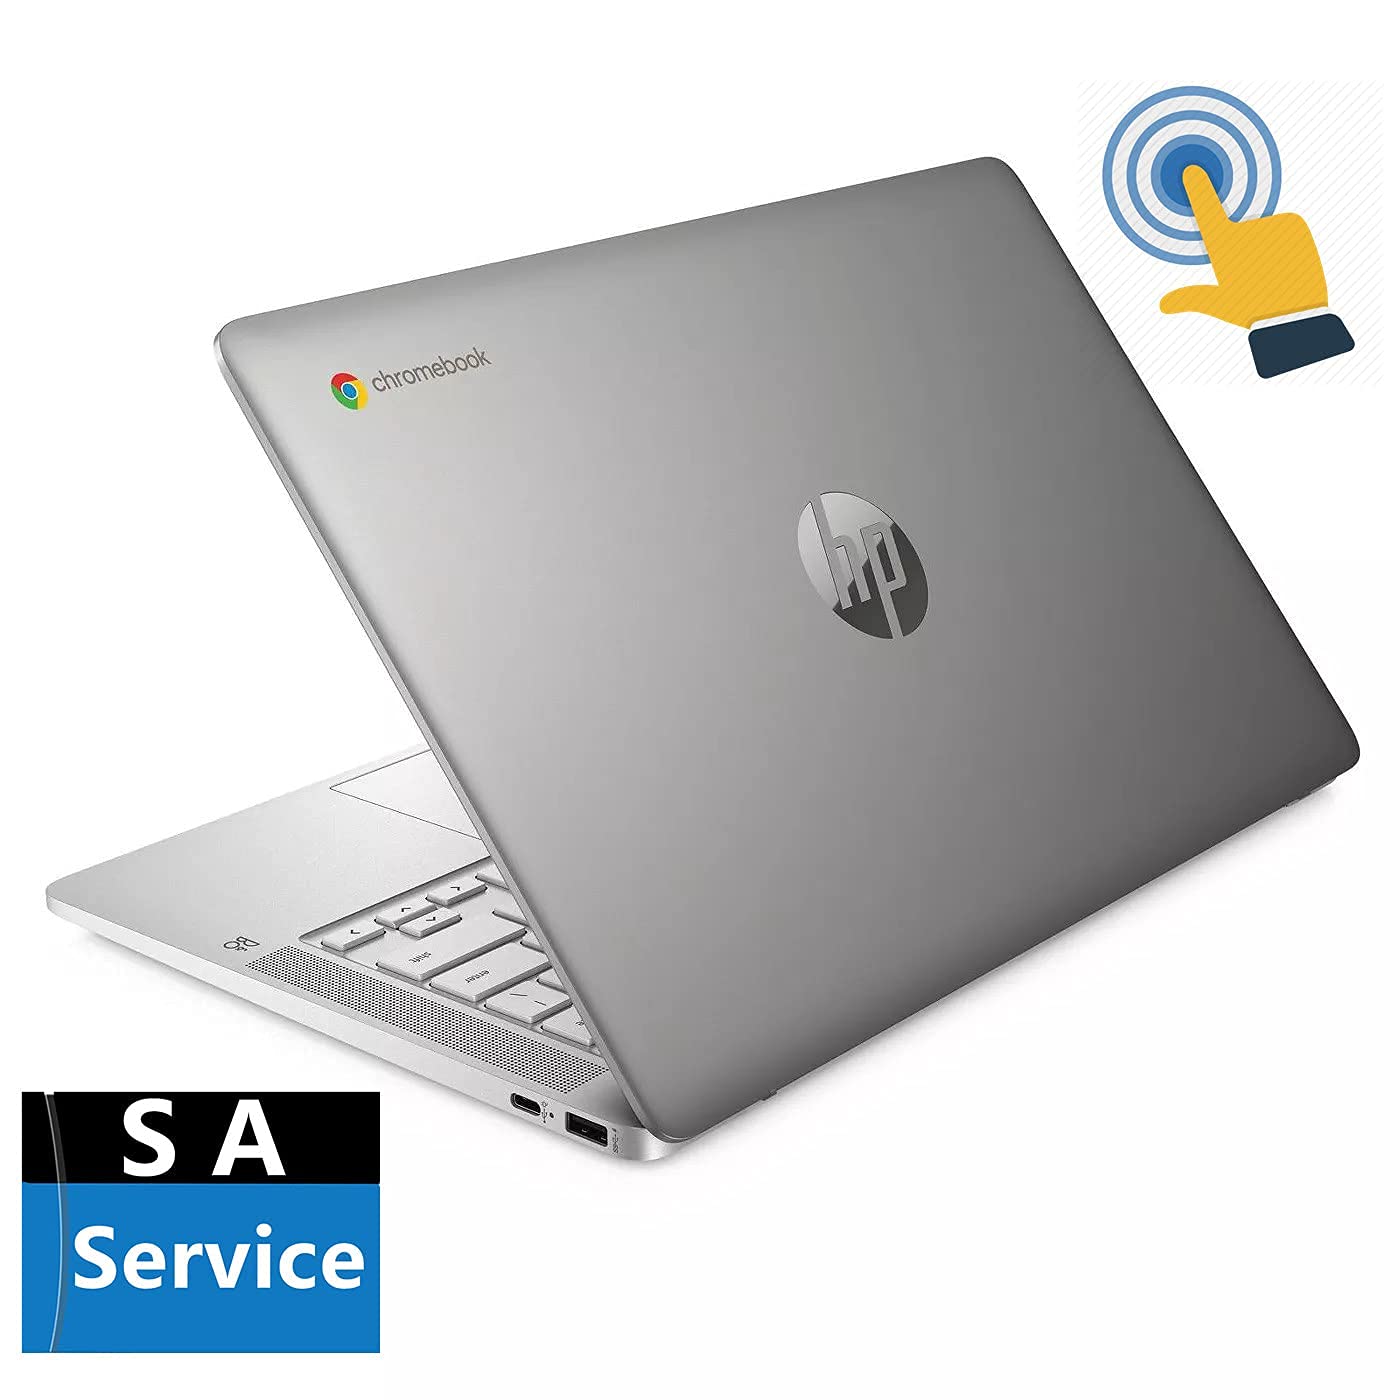 HP 14in Touchscreen Chromebook, Intel Celeron N4000, 4GB RAM, 64GB eMMC, WiFi, Bluetooth, Webcam, Audio by B&O, SA Service, Chrome OS, Brilliant Silver (Renewed)